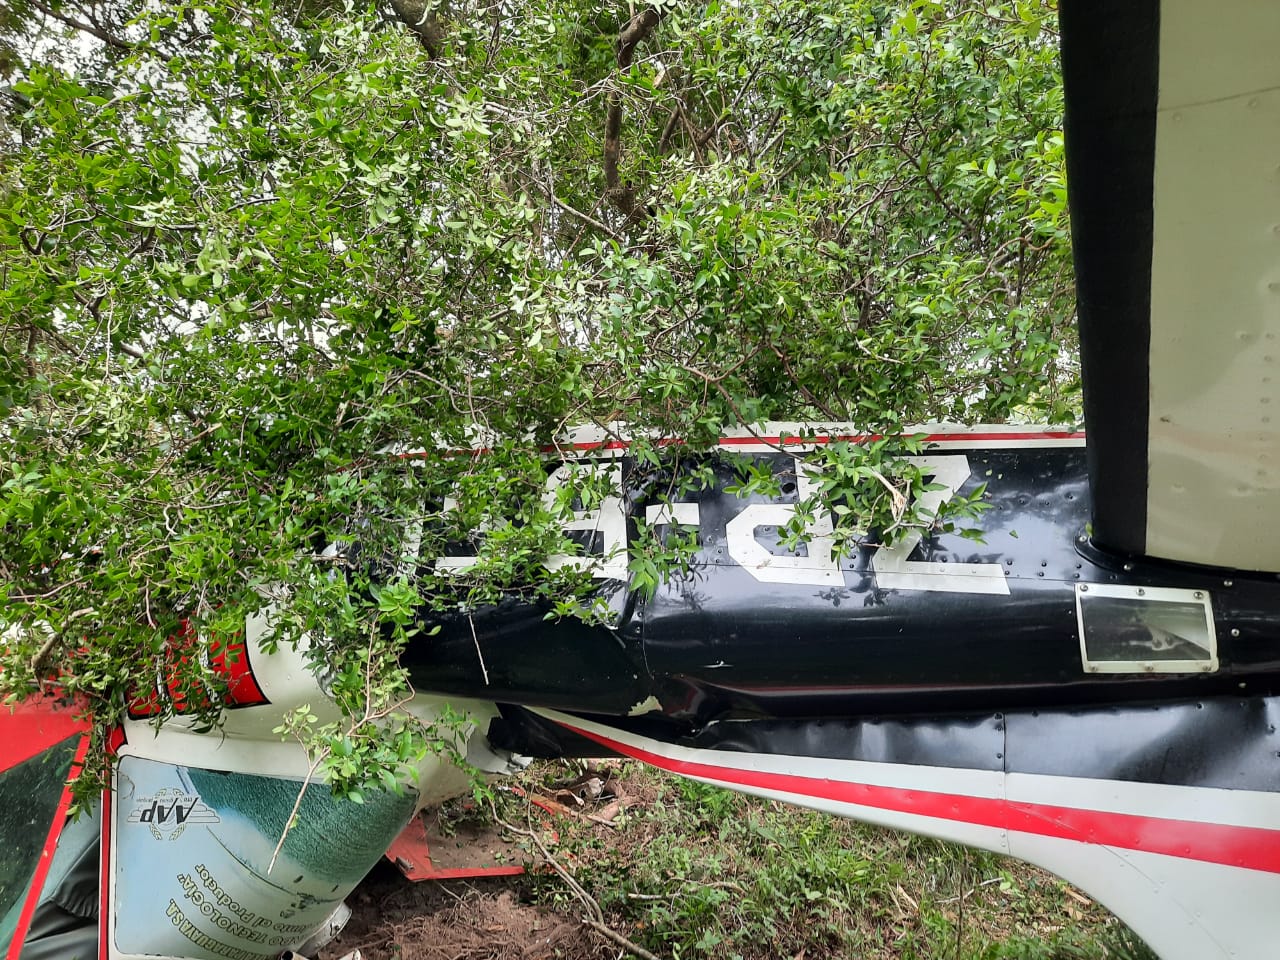 Tras chocar contra la antena, la avioneta cayó y el piloto perdió la vida. Foto: Gentileza.